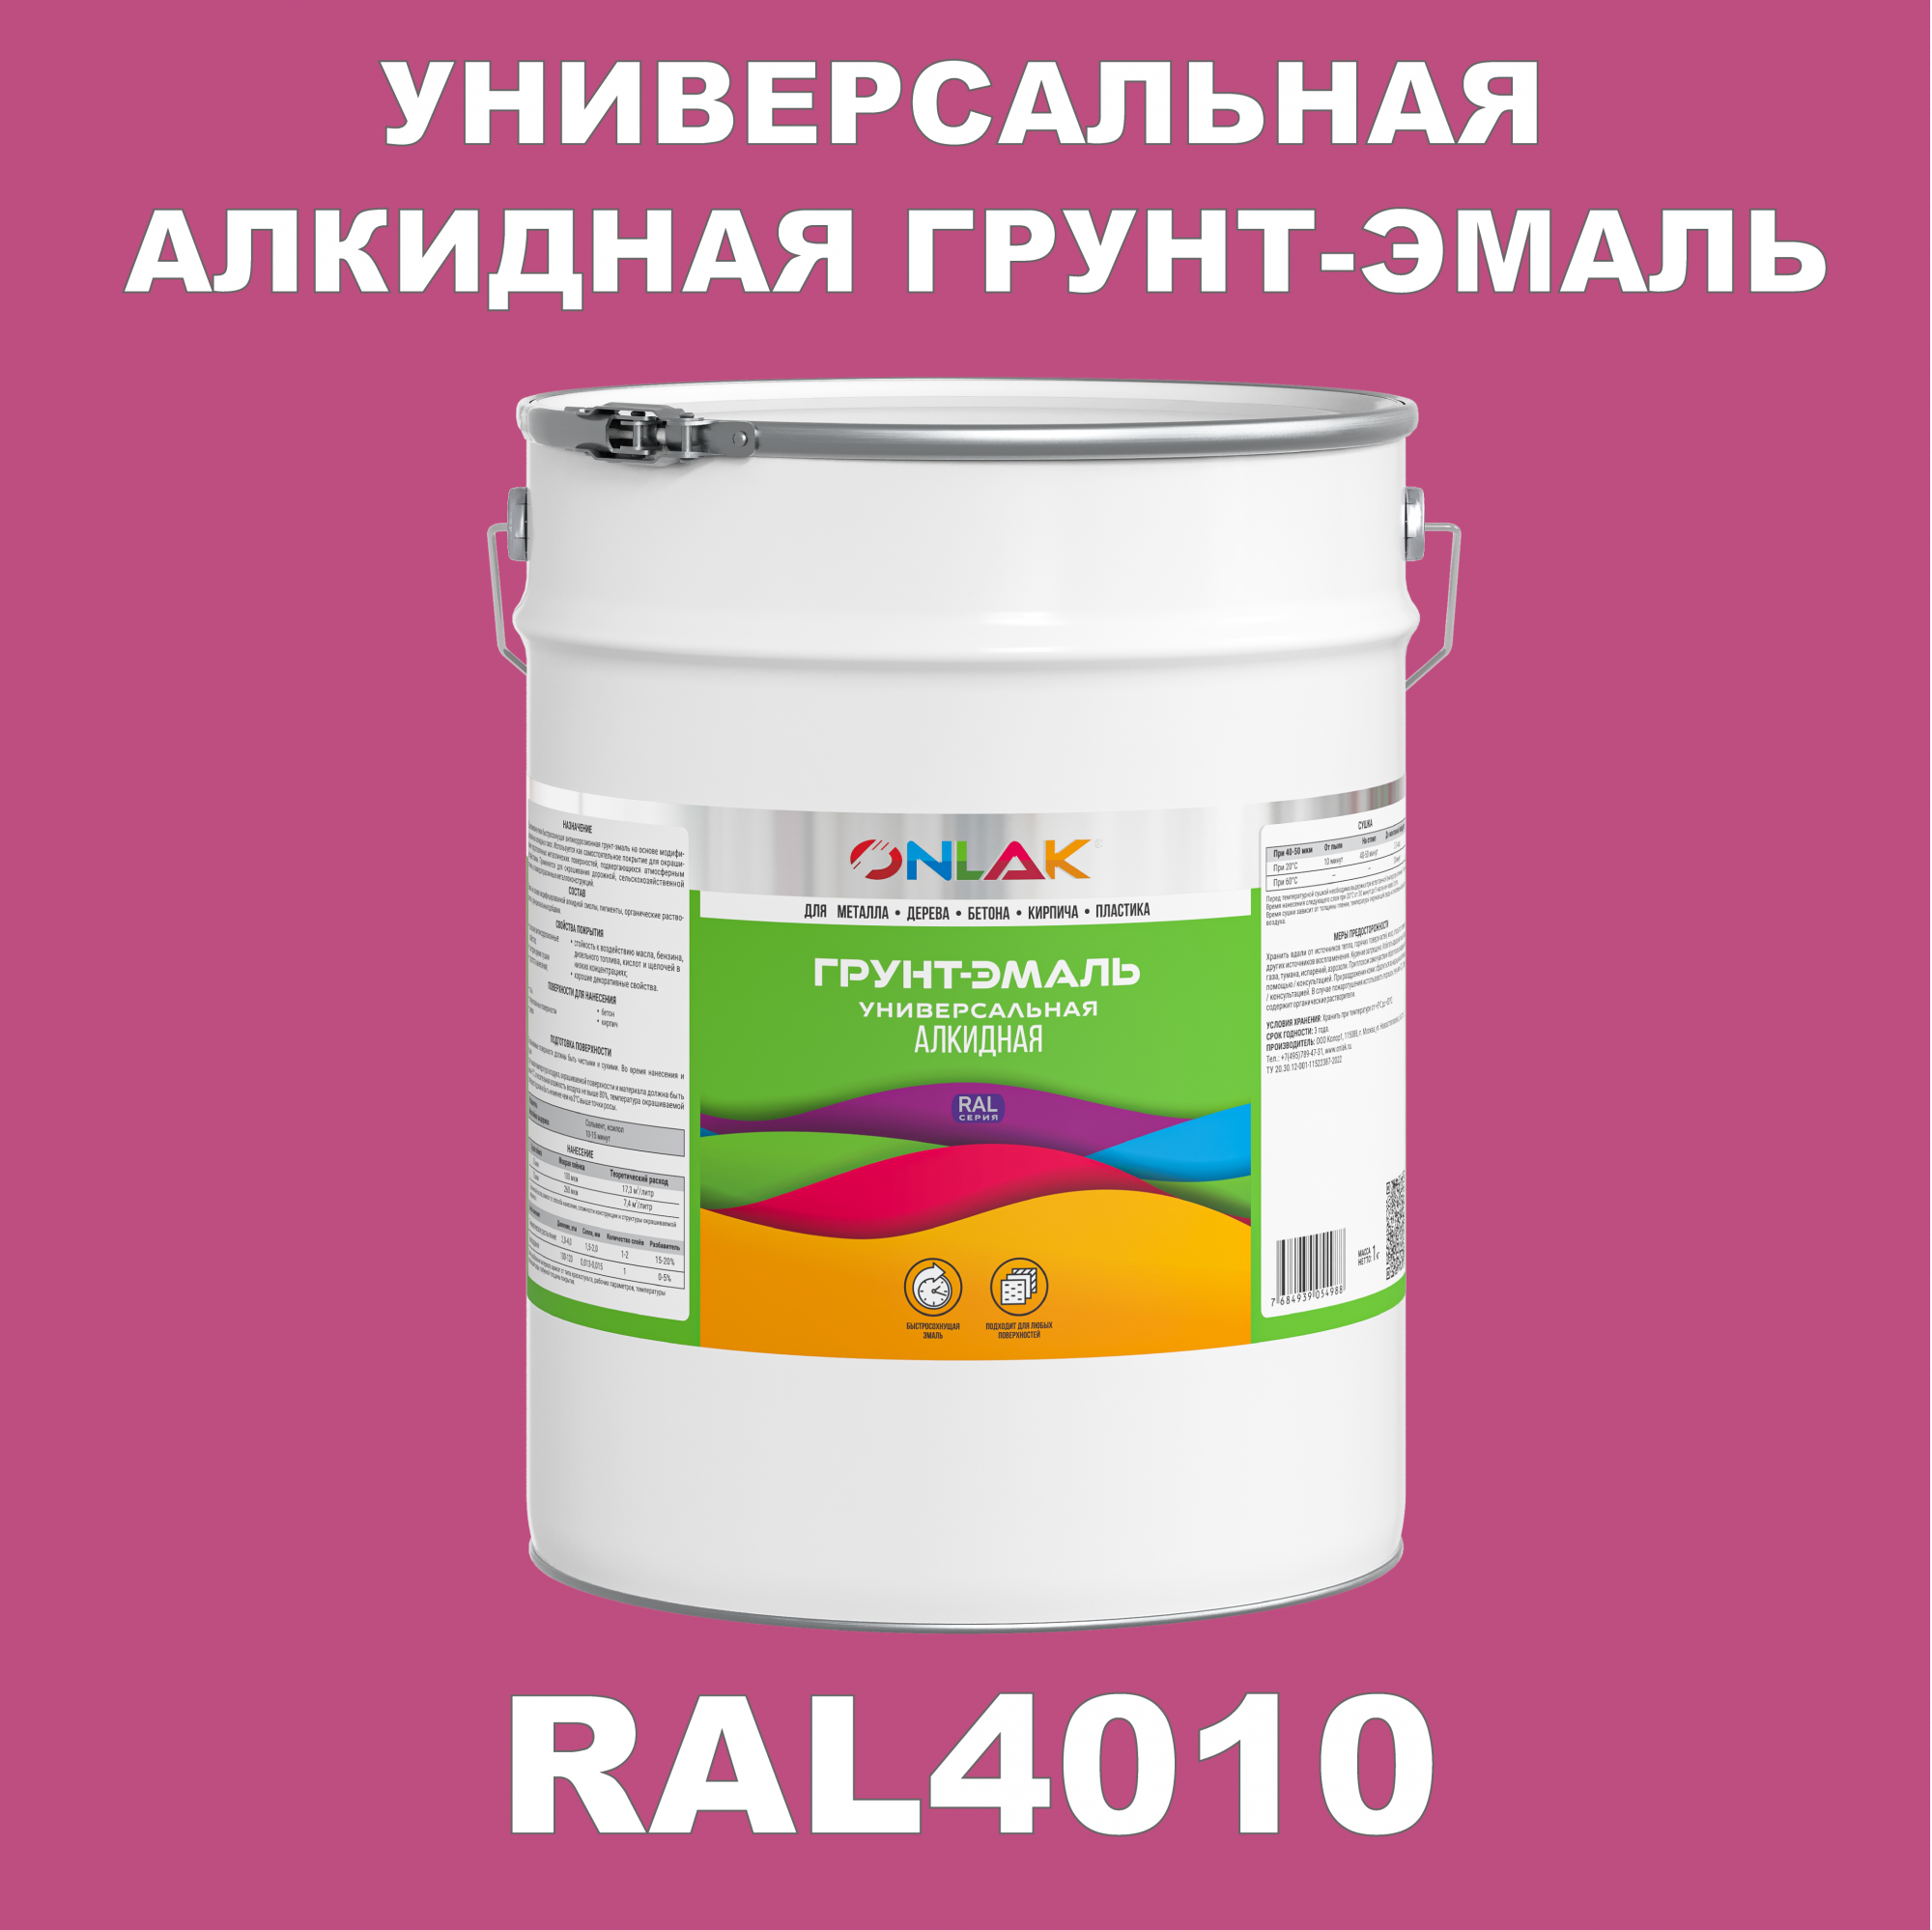 Грунт-эмаль ONLAK 1К RAL4010 антикоррозионная алкидная по металлу по ржавчине 20 кг антикоррозионная грунт эмаль onlak ral 4008 фиолетовый 610 мл